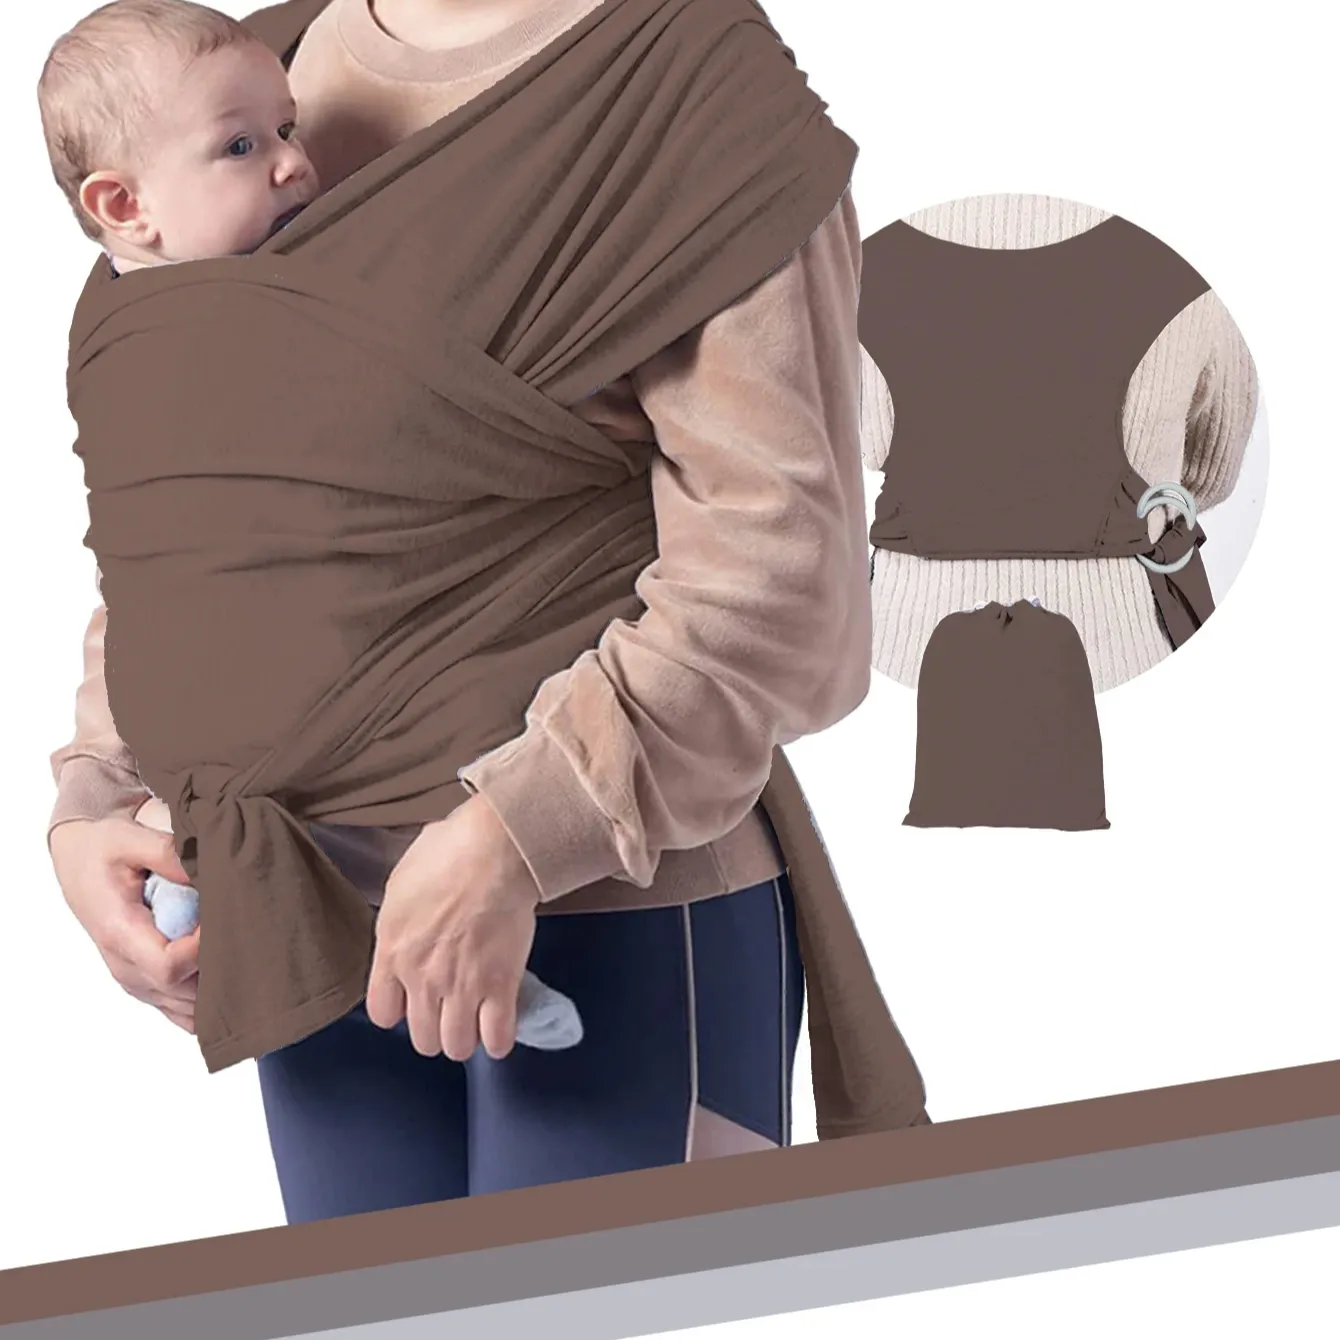 Porta-bebês com bolsos frontais, porta-bebês naturalmente macio, porta-bebês em algodão desde o nascimento